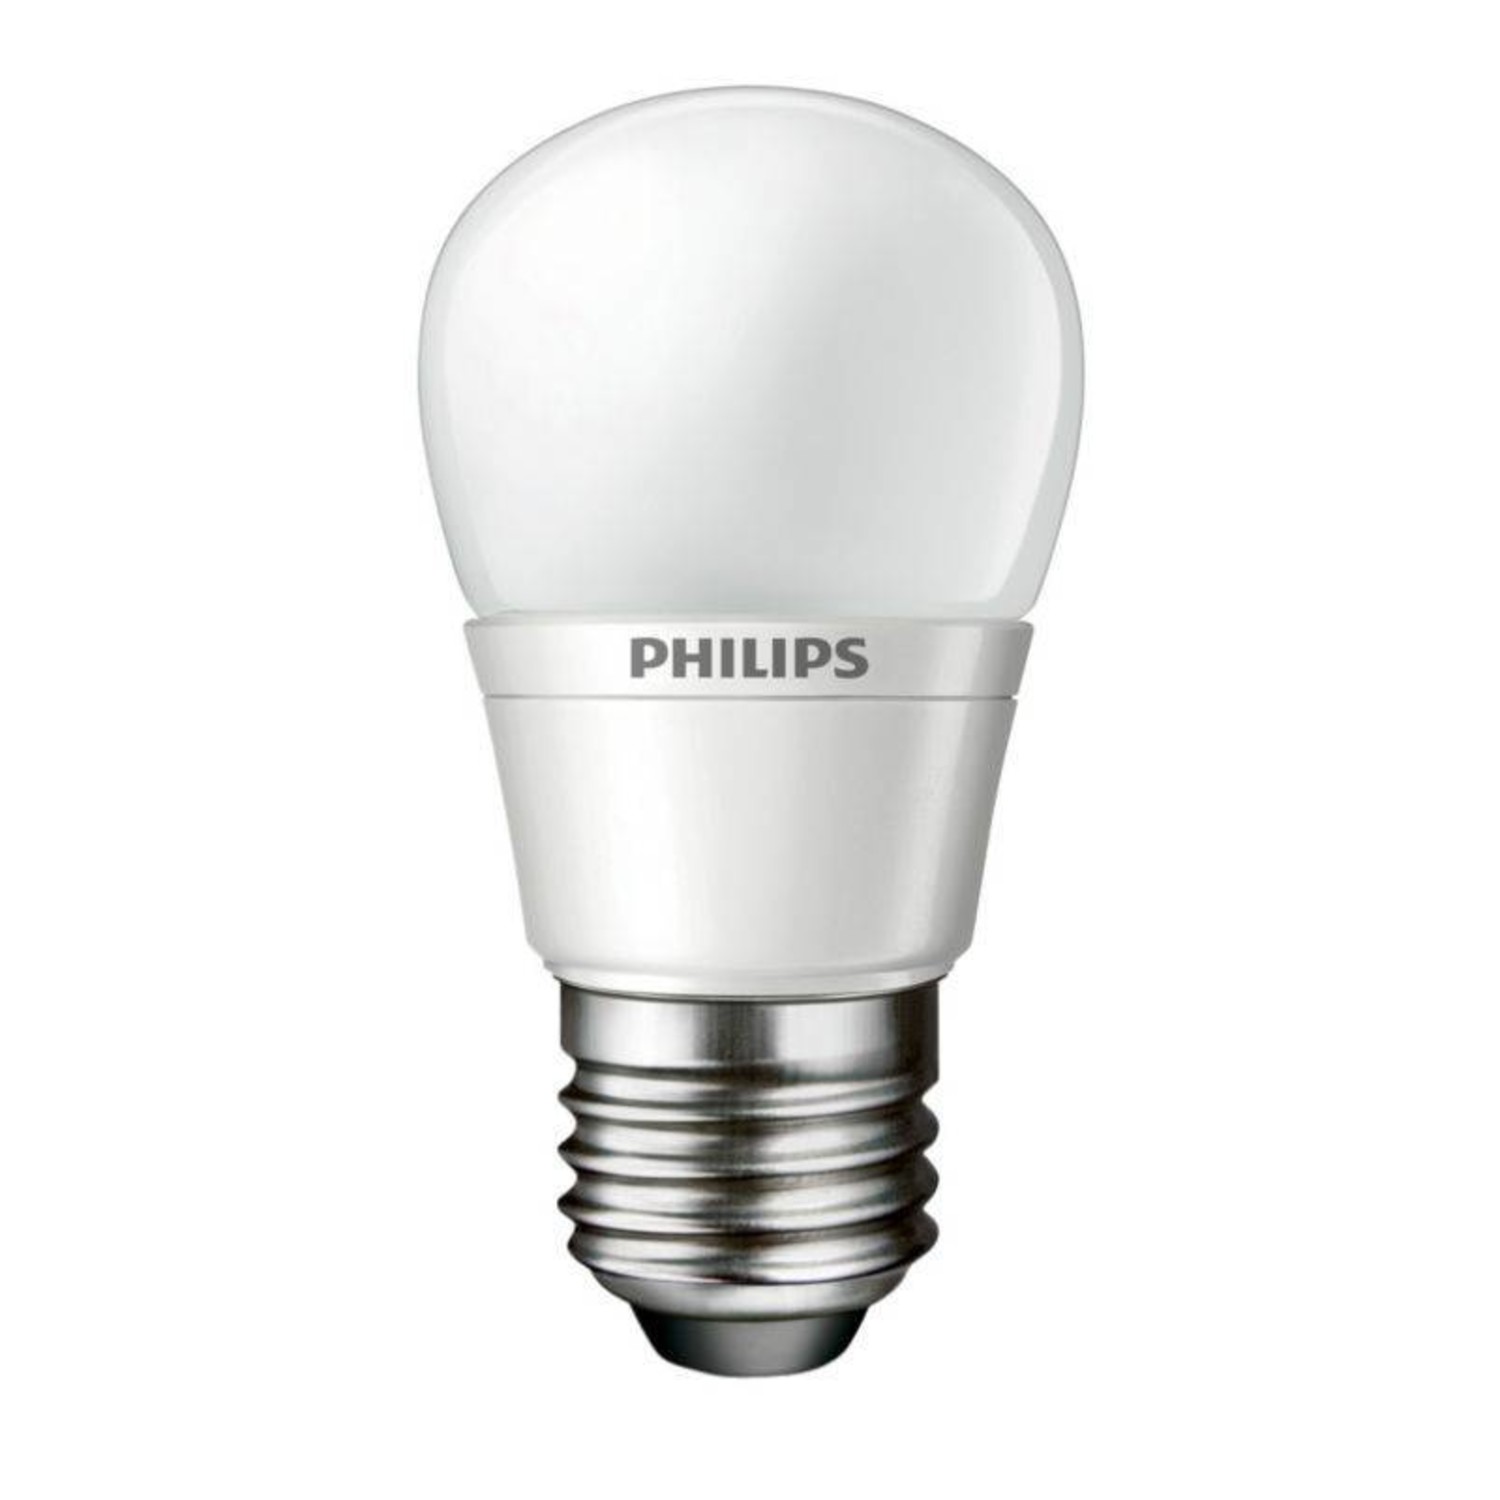 drempel Motel Kan weerstaan Philips LED lamp 3W-15W E27 warm wit - Batterijenstunter.nl